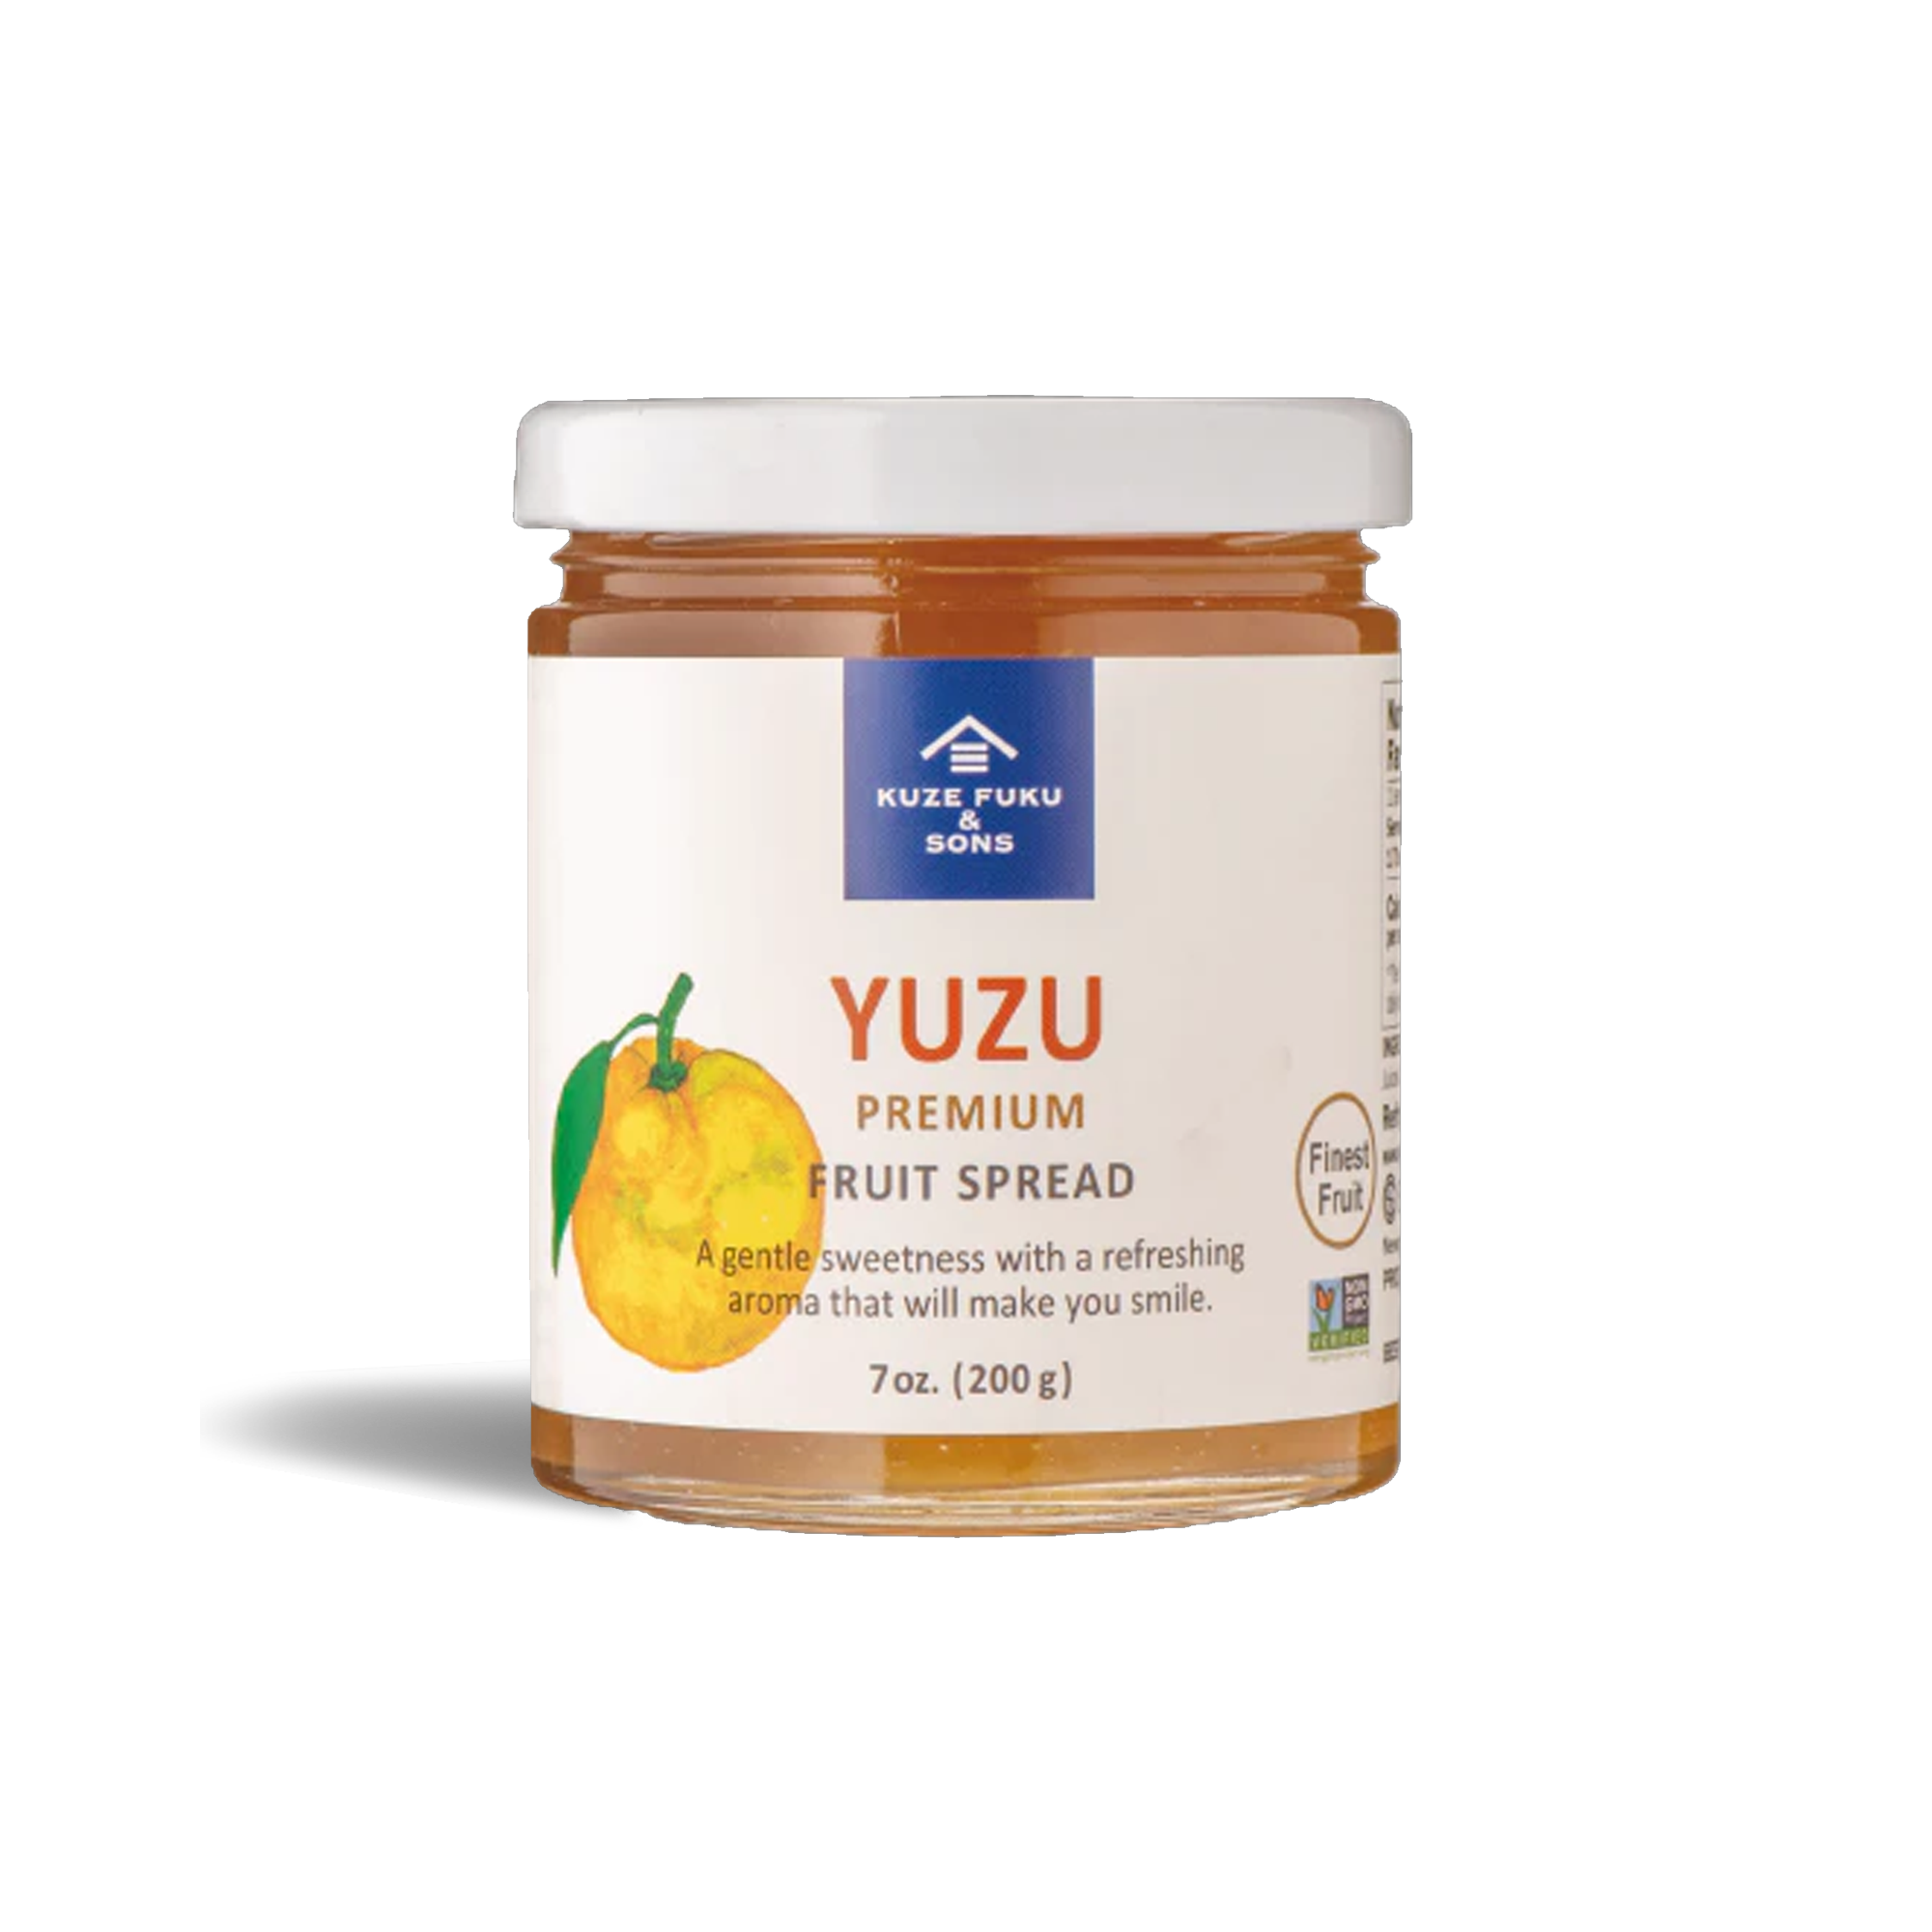 YUZU FRUIT SPREAD [ FREE GIFT ]